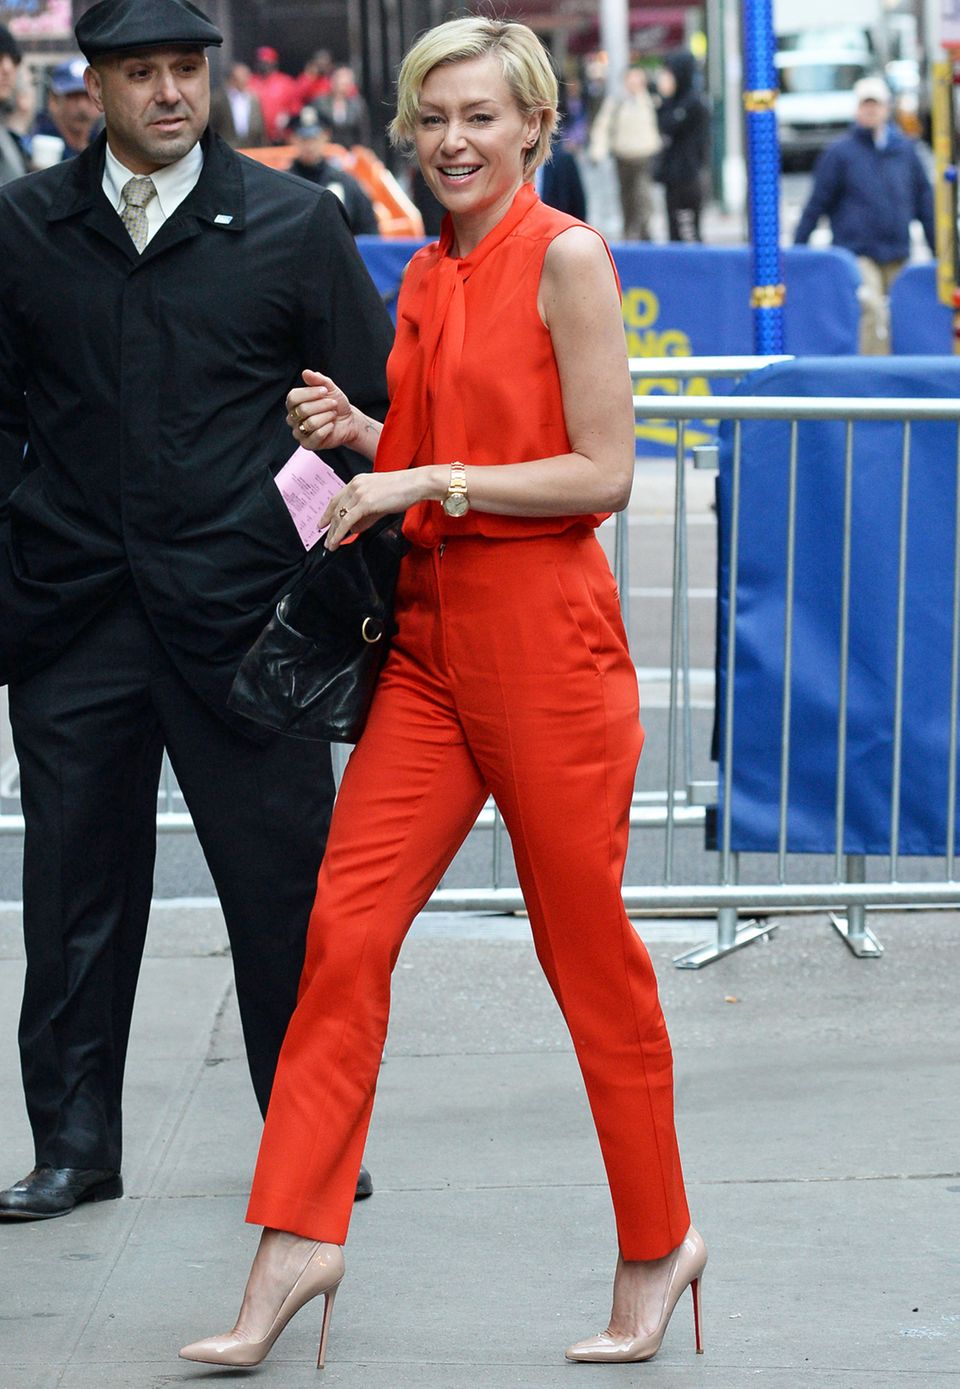 Auf dem Weg zur TV-Show "Good Morning America" sticht Portia de Rossi dank ihres orangeroten Outfits sofort ins Auge.